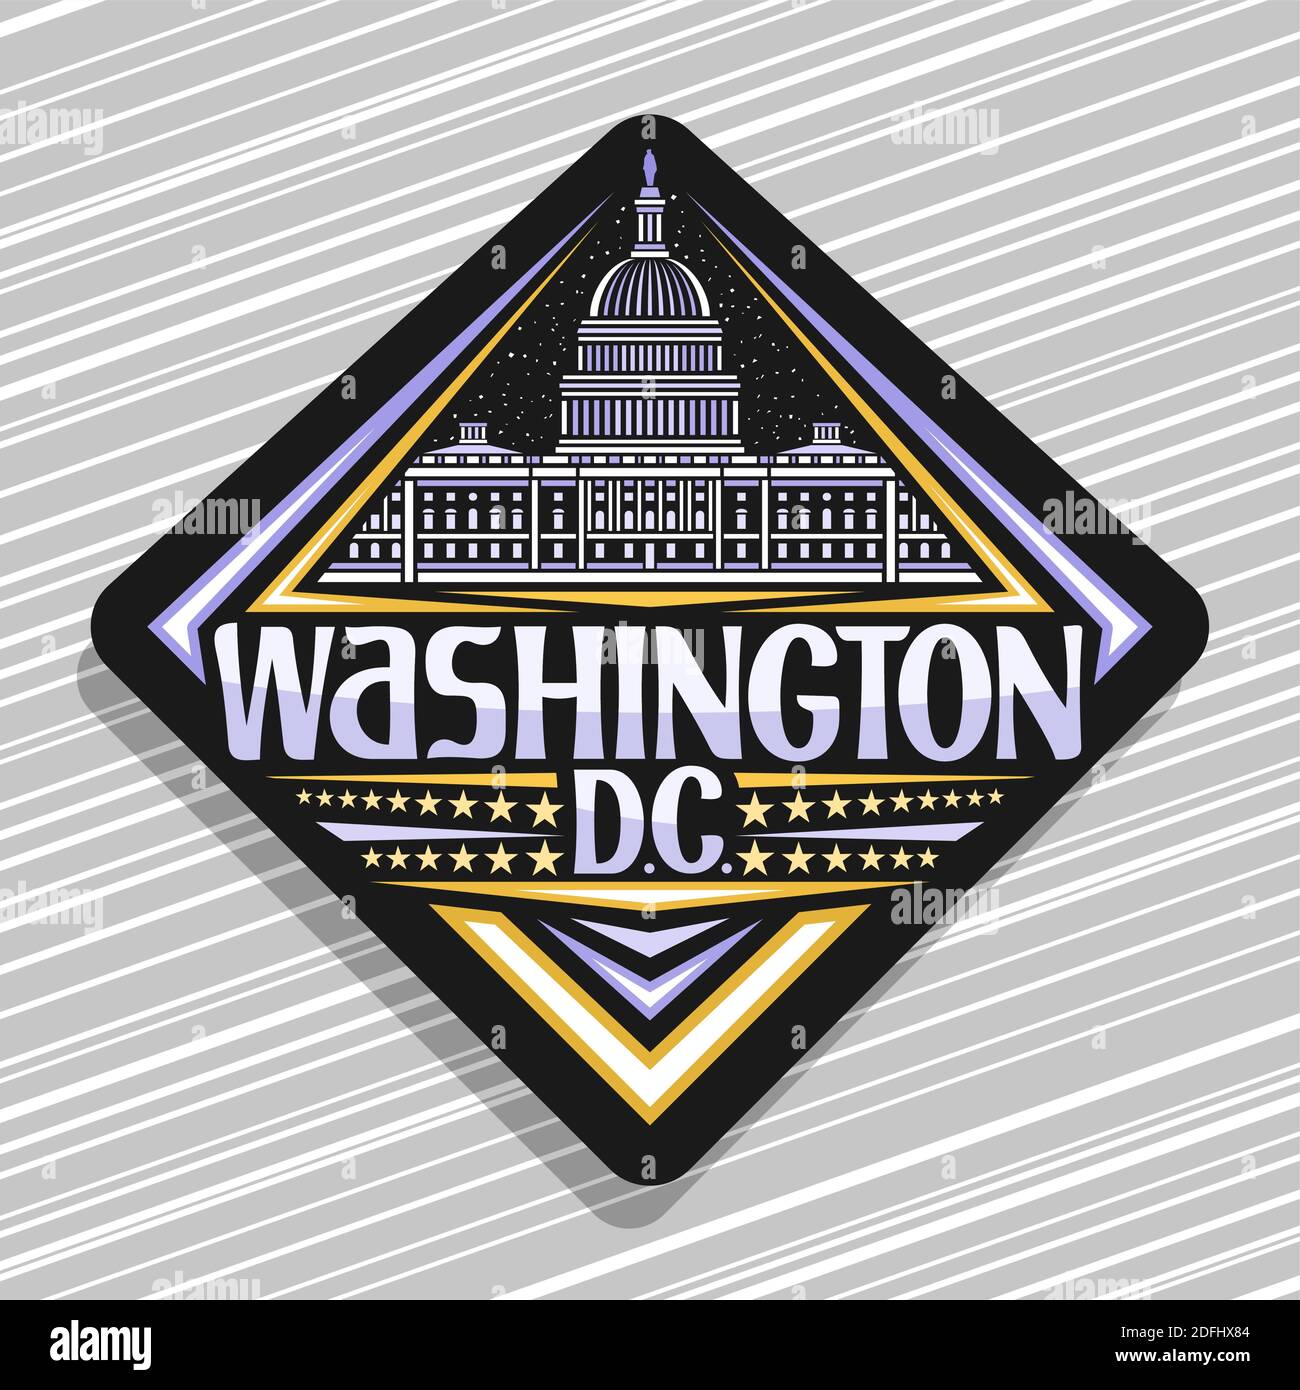 Vektor-Logo für Washington, schwarze Rautenabzeichen mit Umriss Abbildung des Capitol Building auf Dämmerung Himmel Hintergrund, Kunst Design Tourist Kühlschrank Magnet Stock Vektor